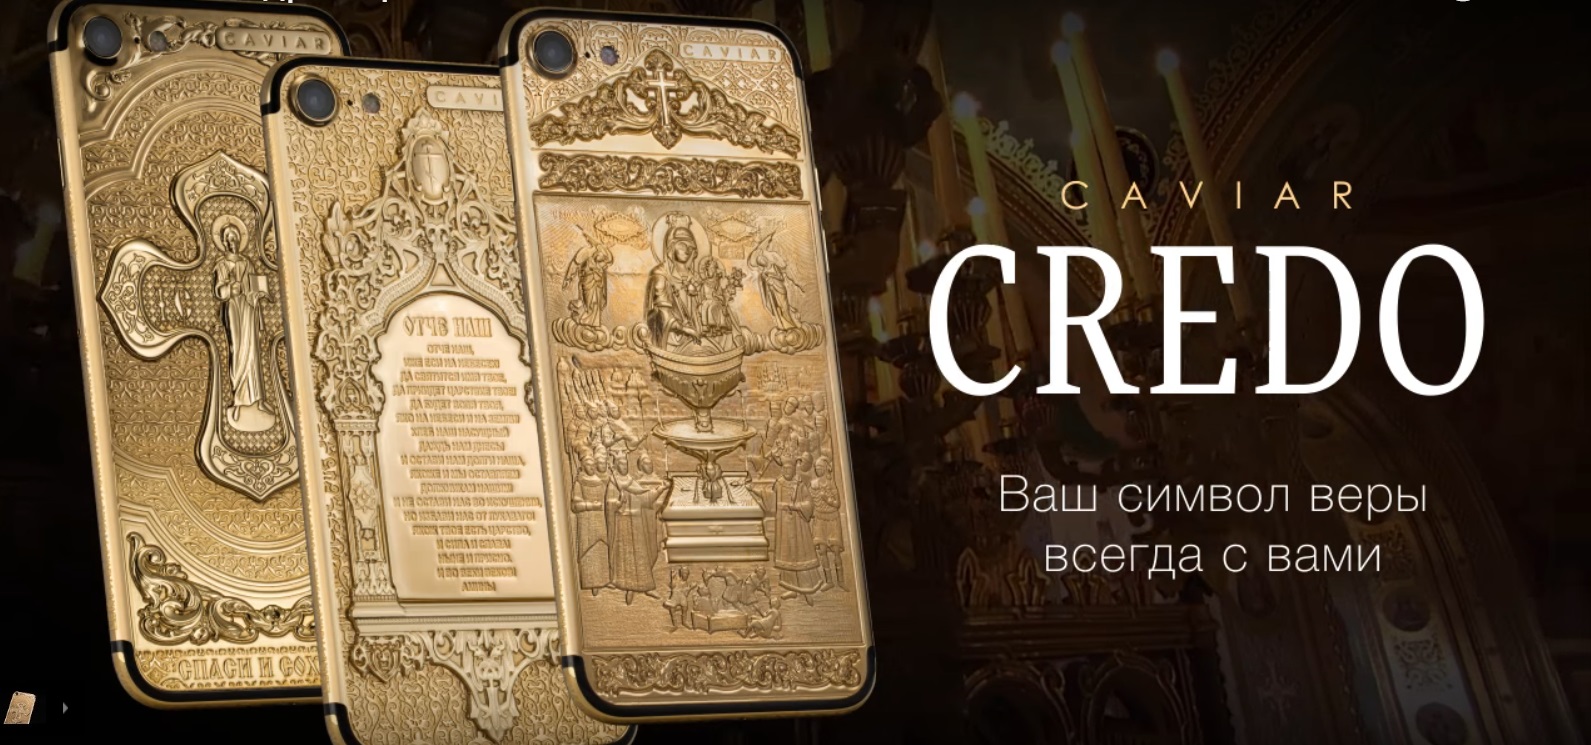 В Росії до Великодня пропонують золоті «Айфони», освячені в церкві